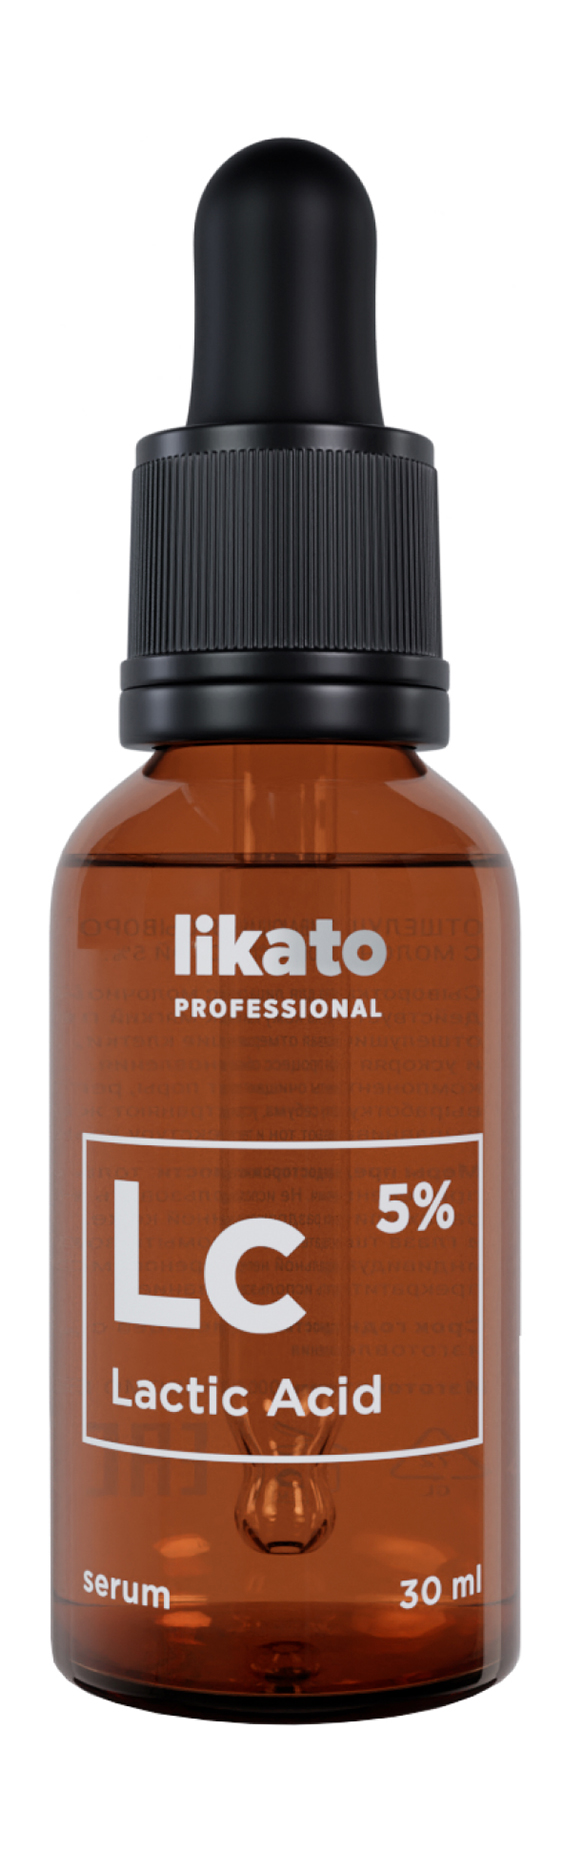 Сыворотка Likato Professional Lactic Acid 5% Serum отшелушивающая с молочной кислотой 30 м сыворотка пилинг the ordinary с молочной кислотой lactic acid 10% ha 2% superficial peel